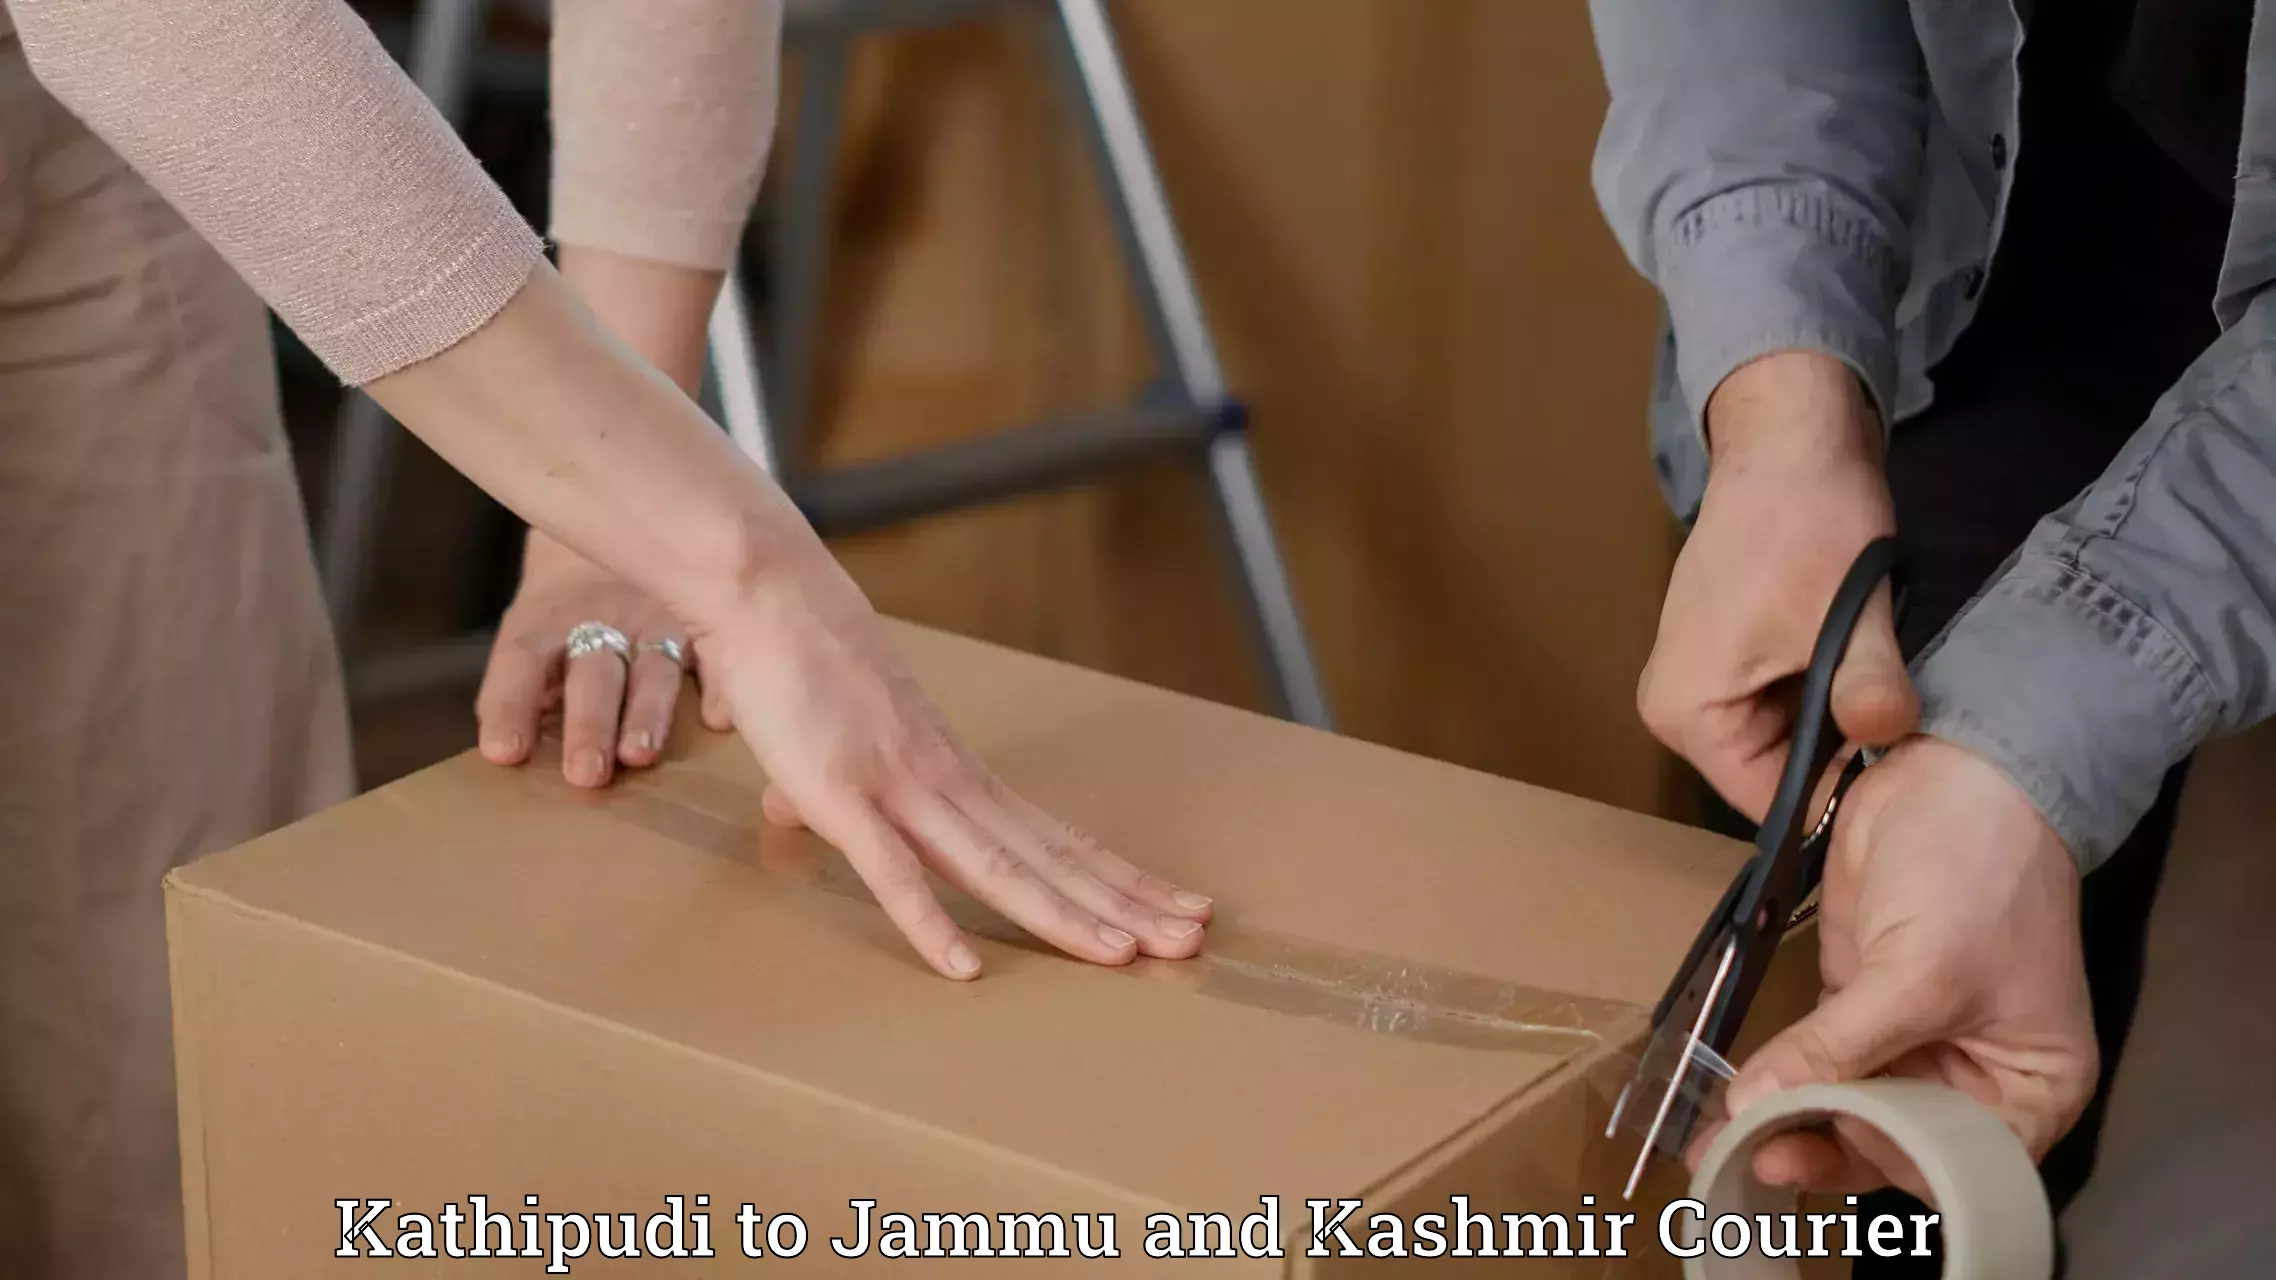 Large package courier Kathipudi to Srinagar Kashmir